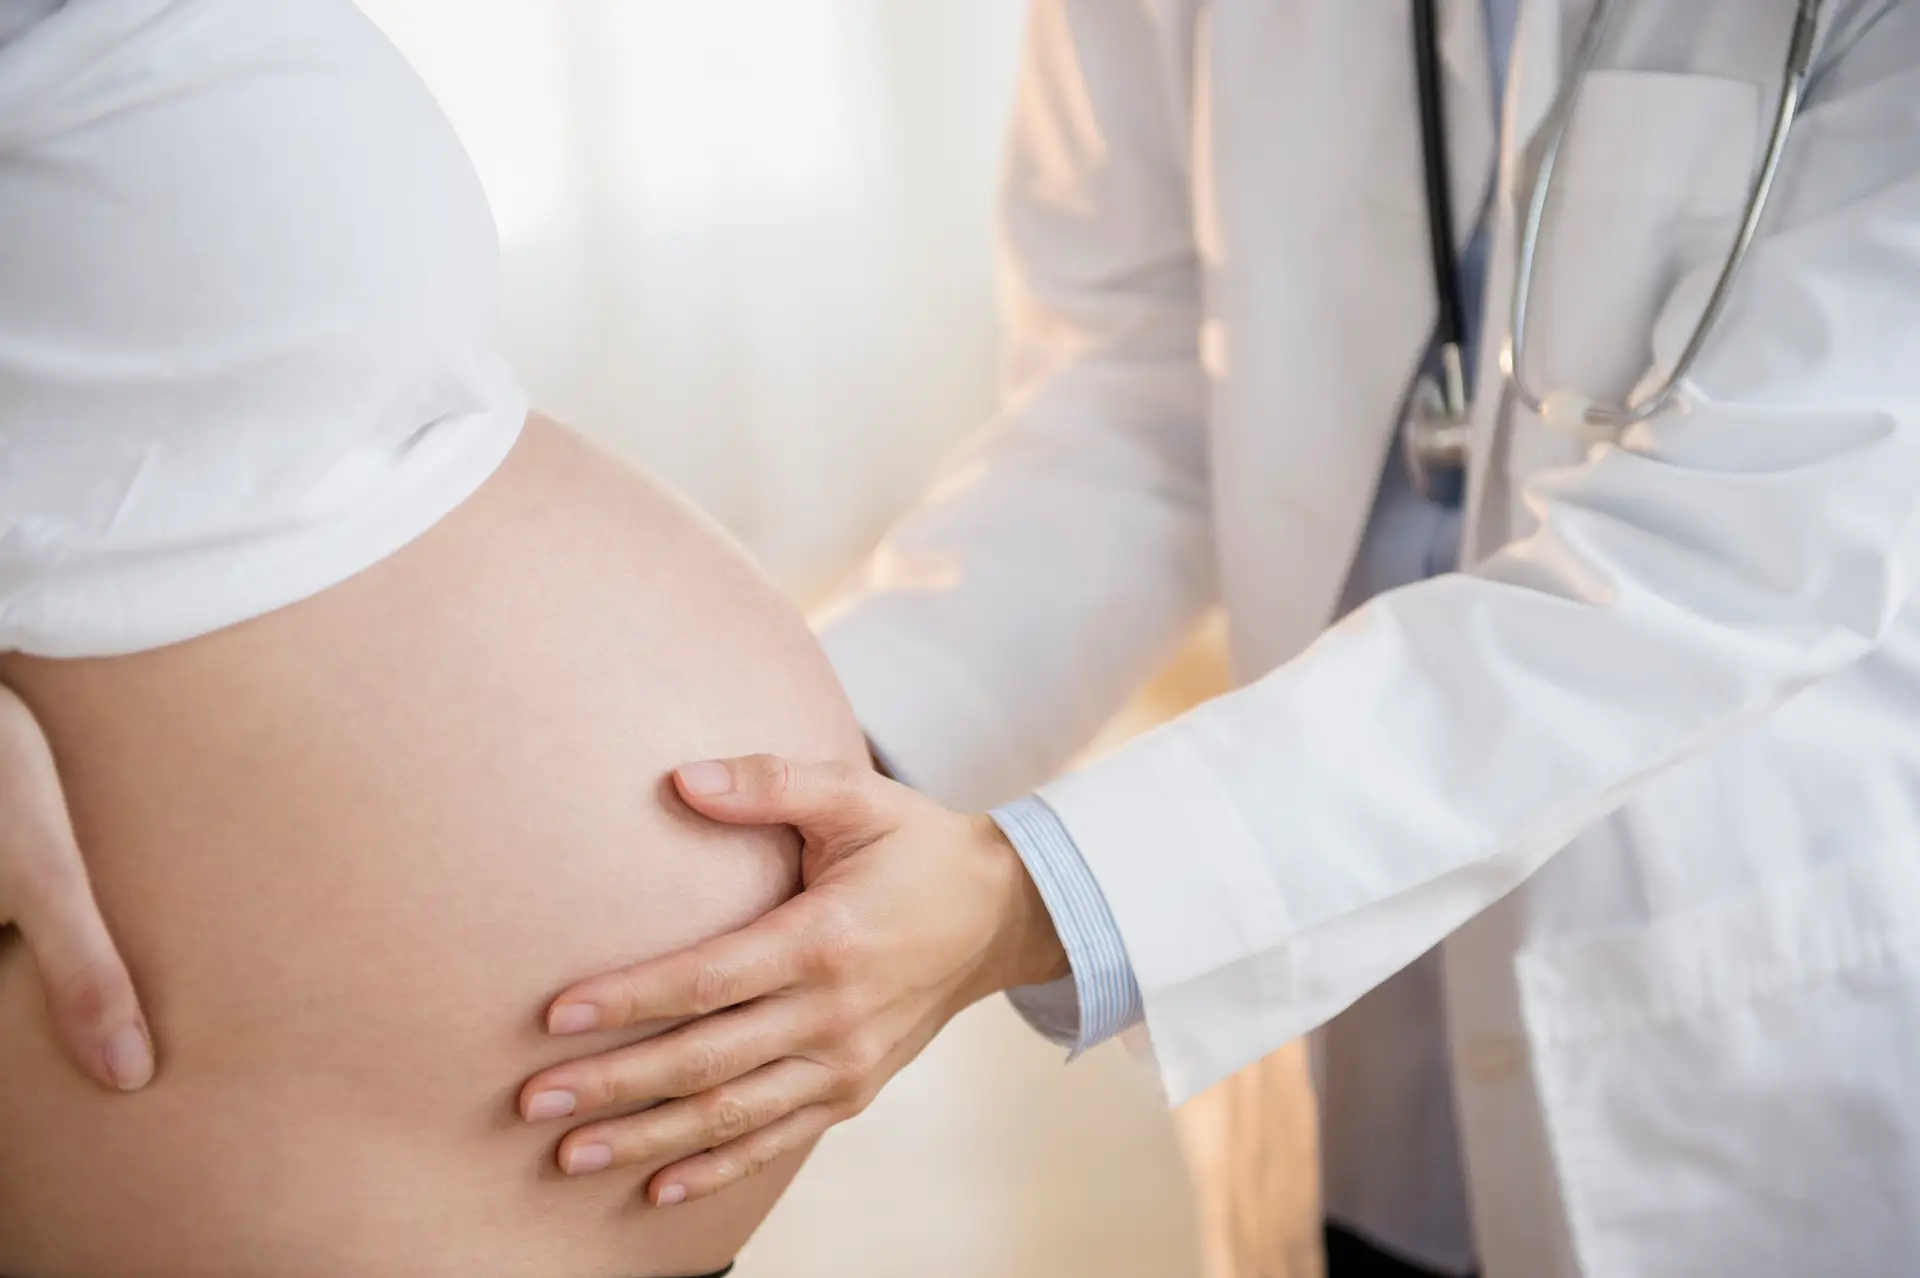 Faro centraliza urgências de obstetrícia de toda a região do Algarve